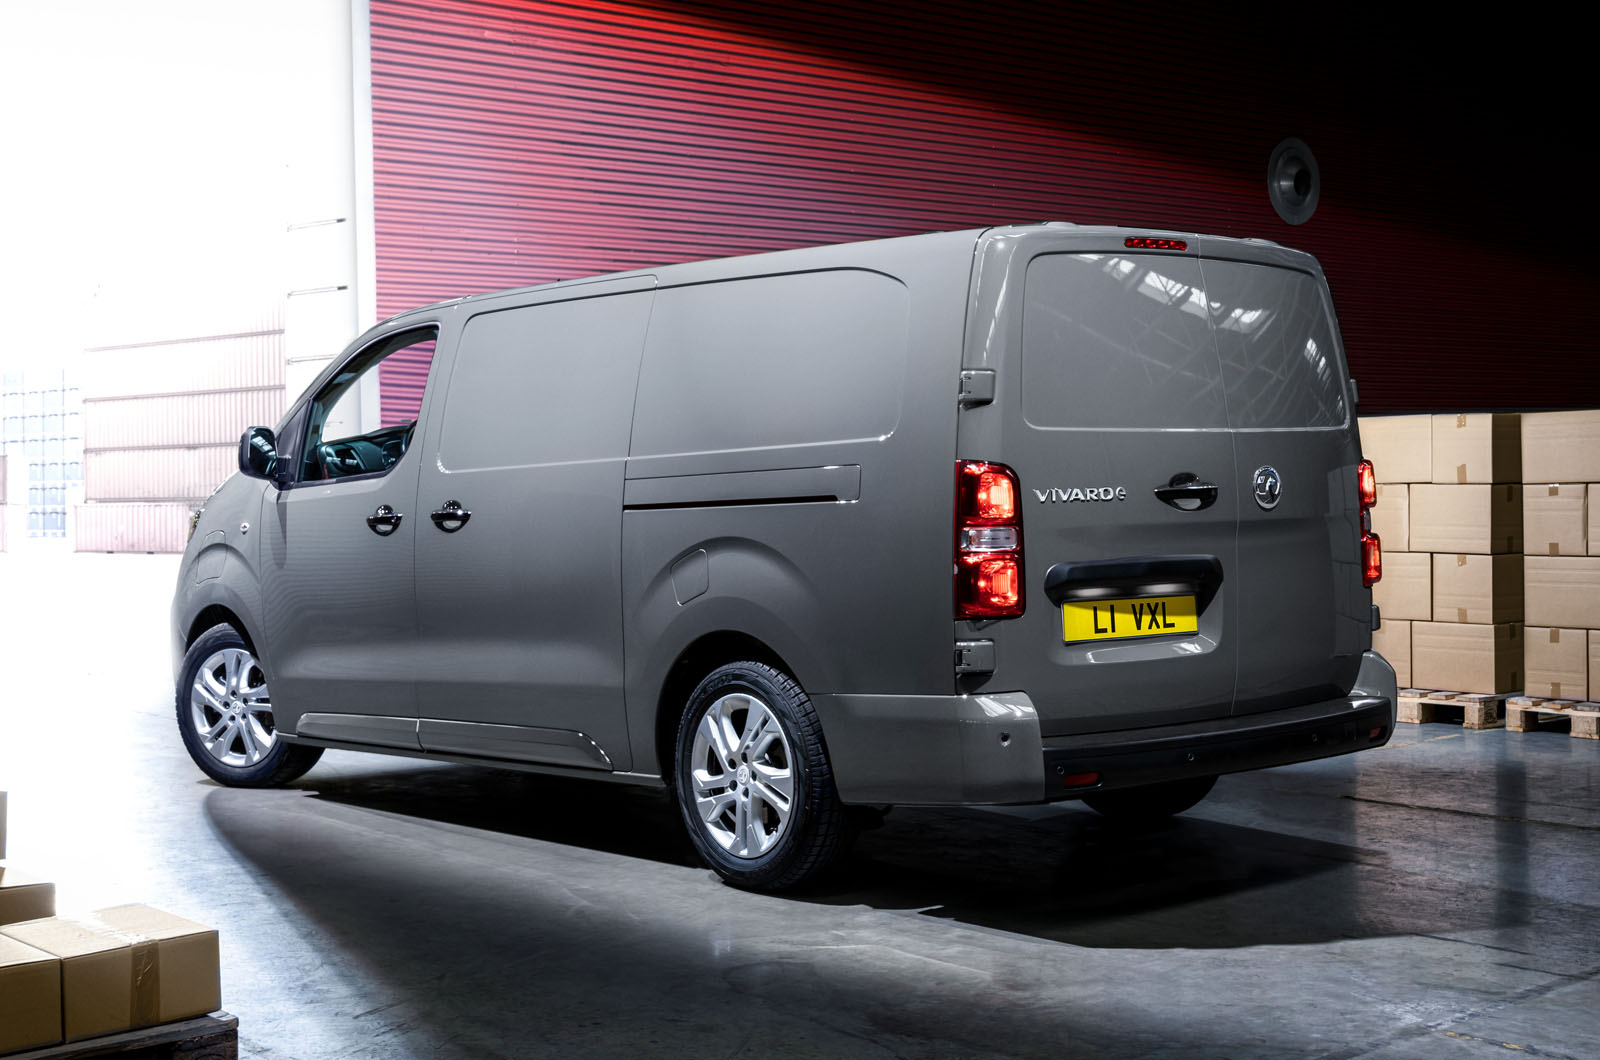 Alt det bedste Uredelighed Udlænding New Vauxhall Vivaro-e electric van revealed with 188-mile range | Autocar